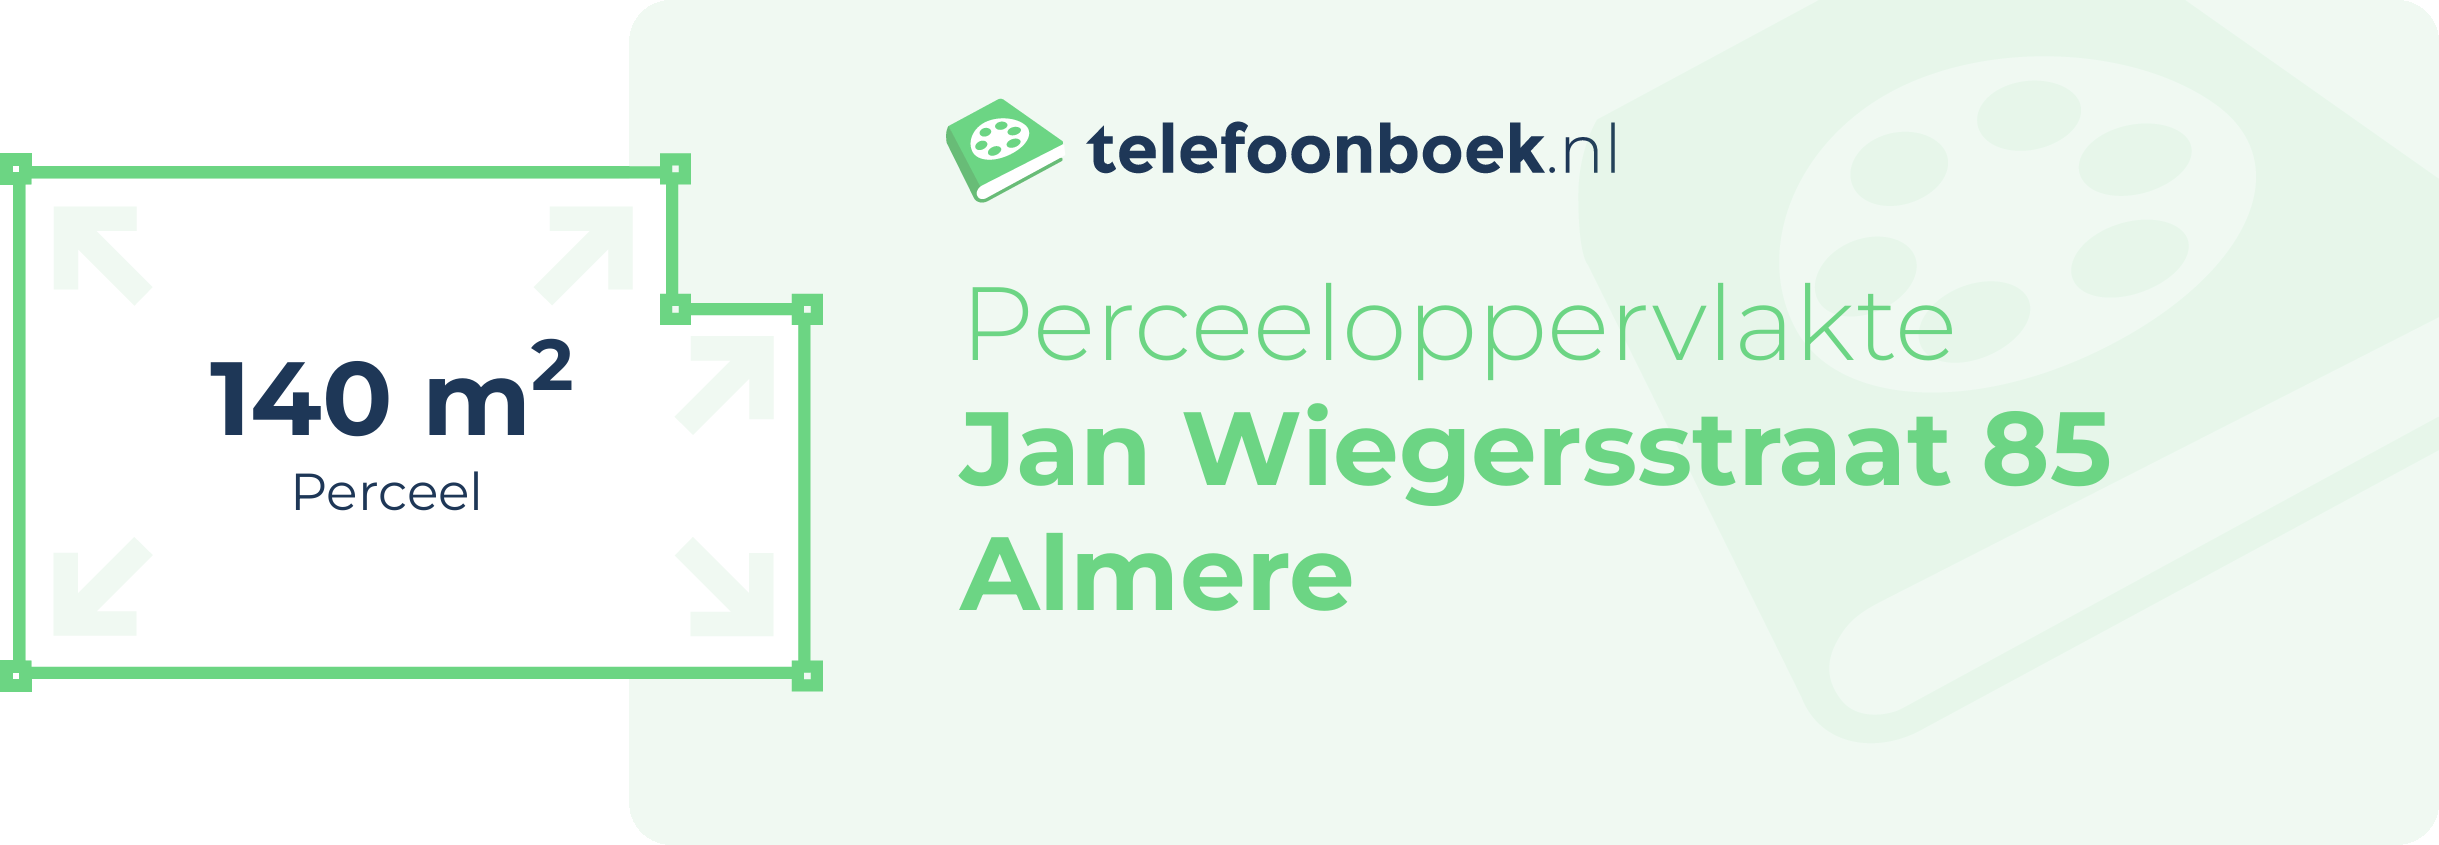 Perceeloppervlakte Jan Wiegersstraat 85 Almere